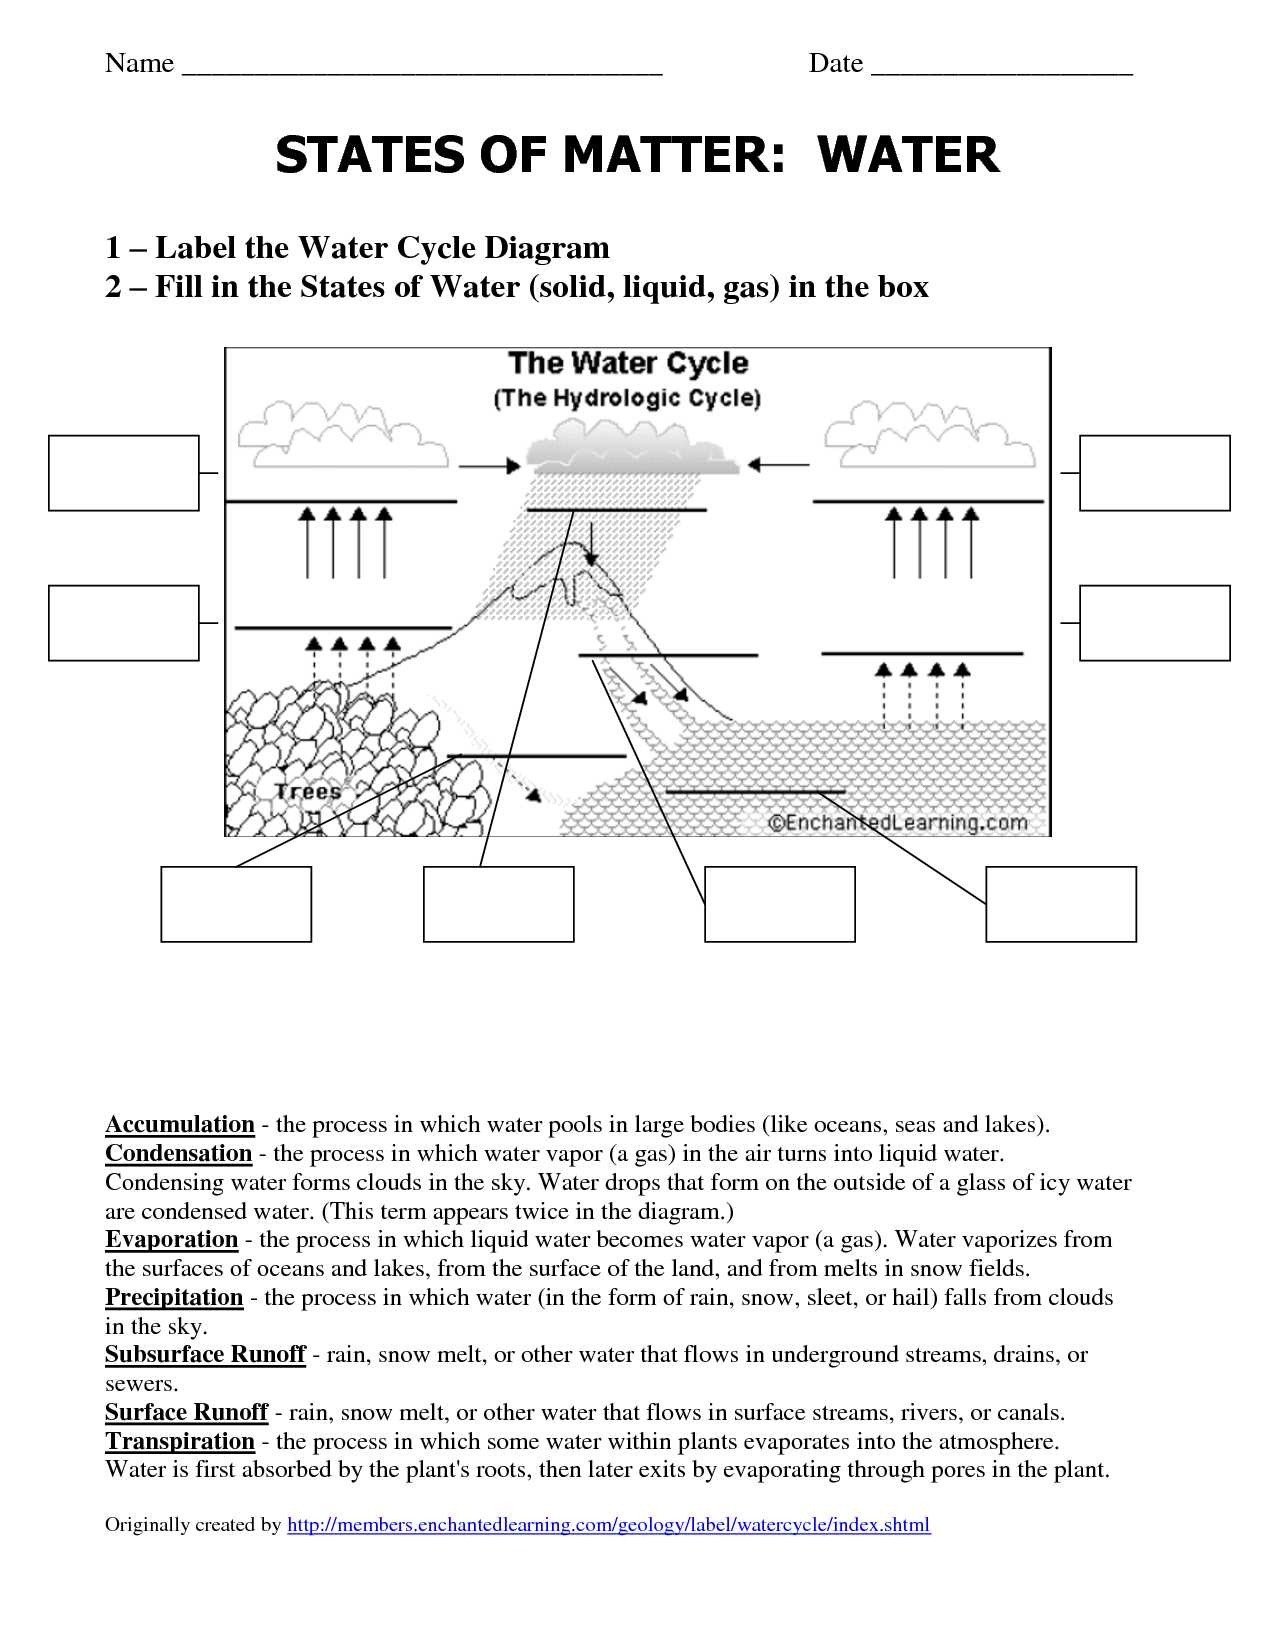 Label the Water Cycle Worksheet or Water Cycleksheet Kindergarten Printable Diagram iPhone Drop